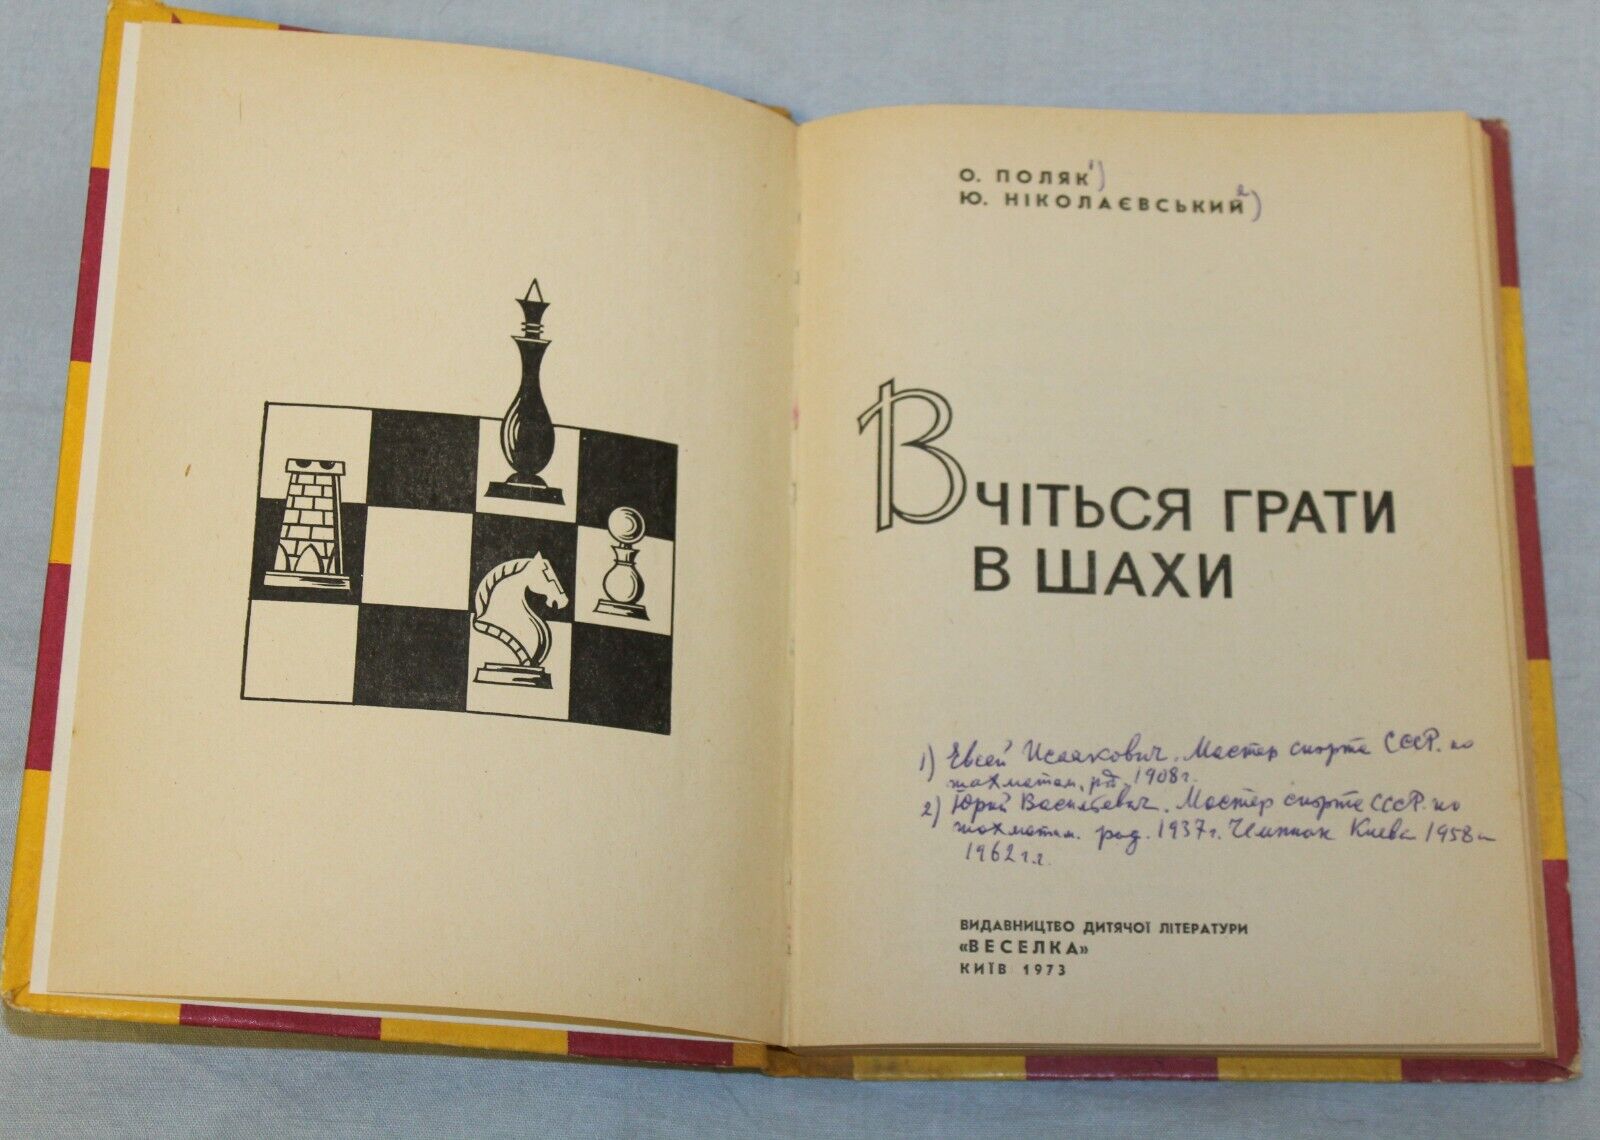 11706.Soviet Chess Book. Polyak A. Nikolaevskii Yu. Learn to play chess. Kiev. 1973